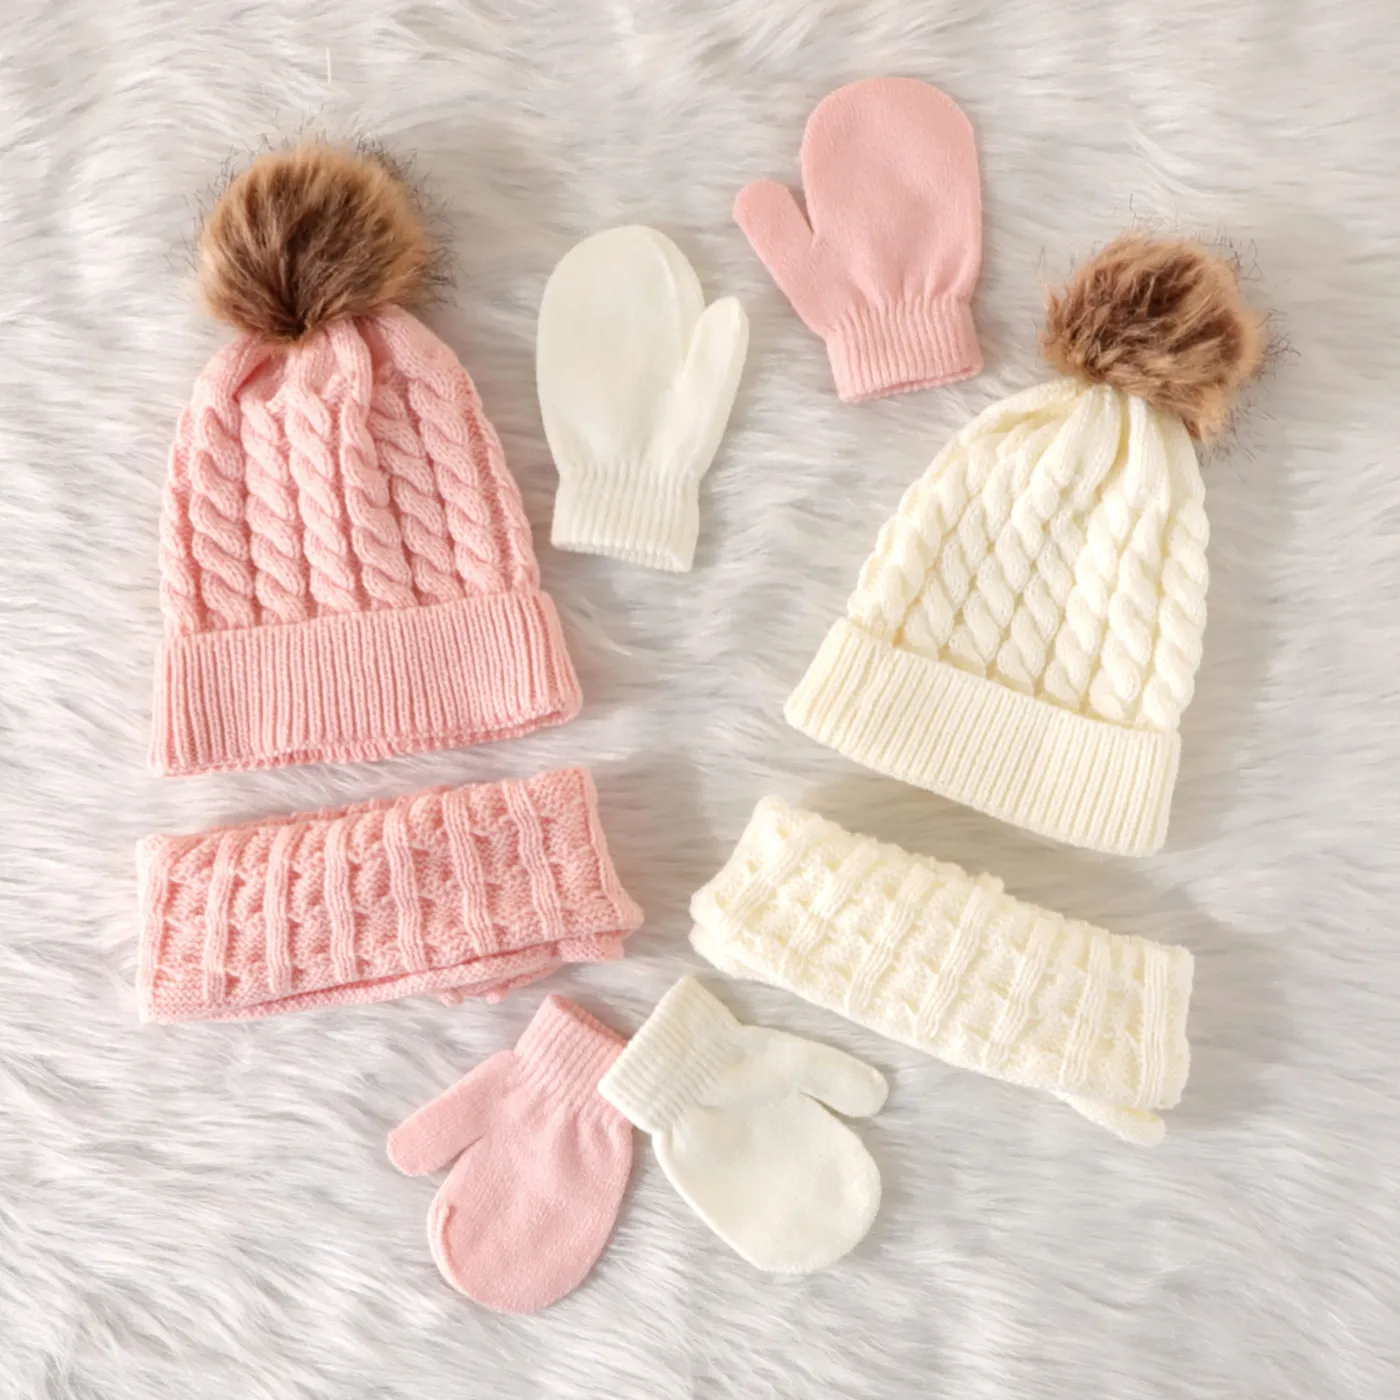 3 件裝嬰兒 / 蹣跚學步的絨球裝飾純色絞花針織帽、圍巾和連指手套套裝